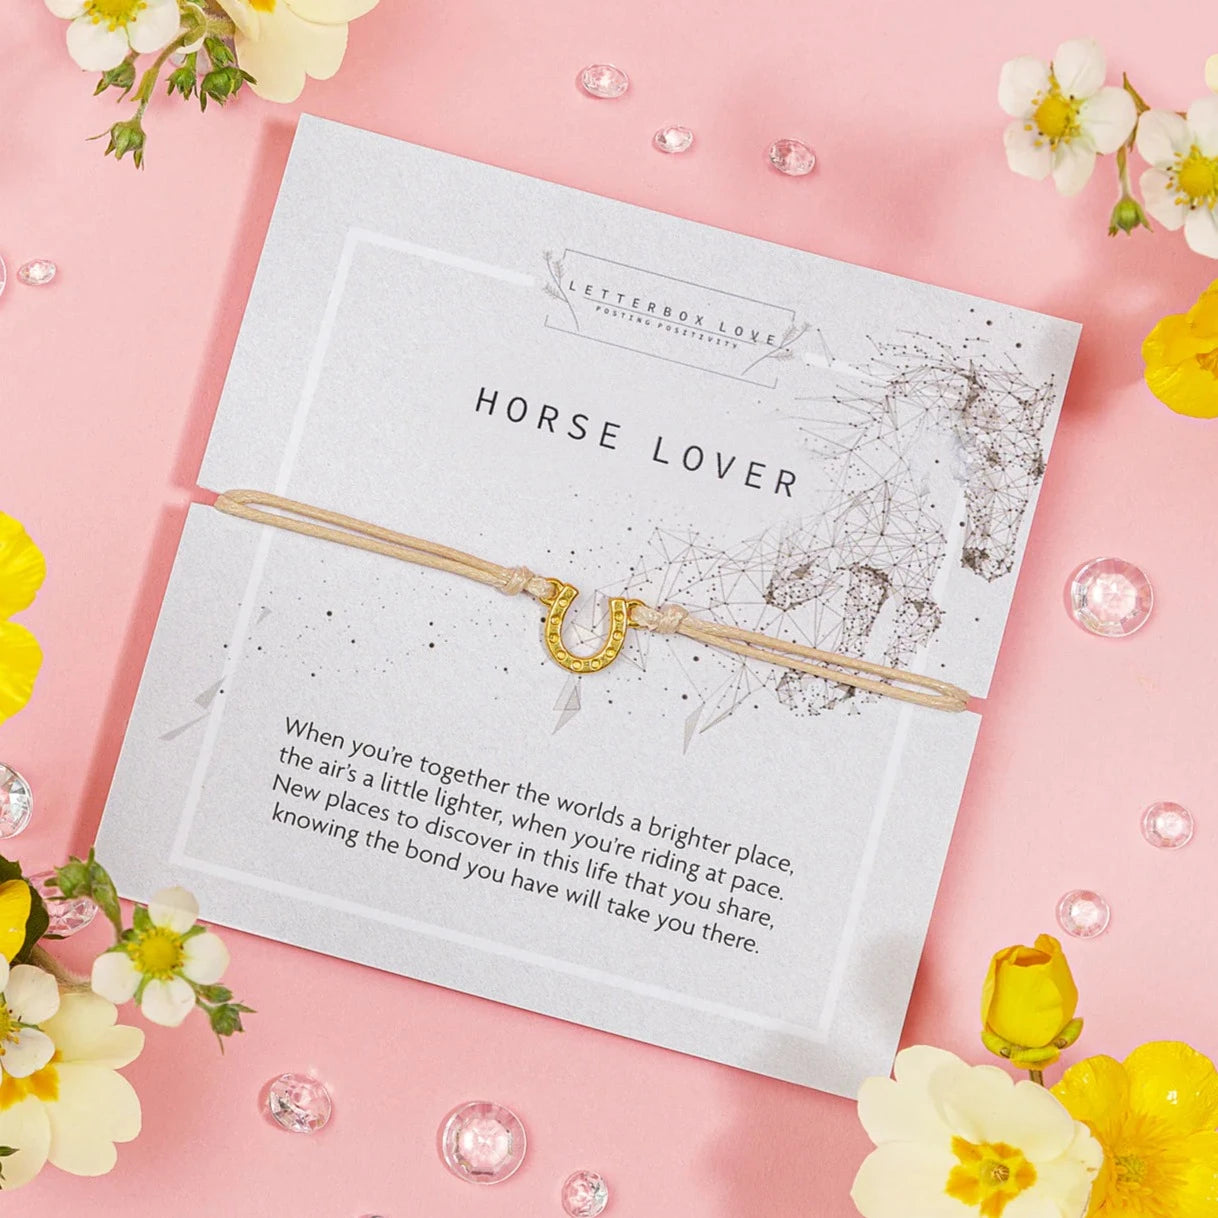 "Horse Lover" Keepsake Bracelet and Card Set